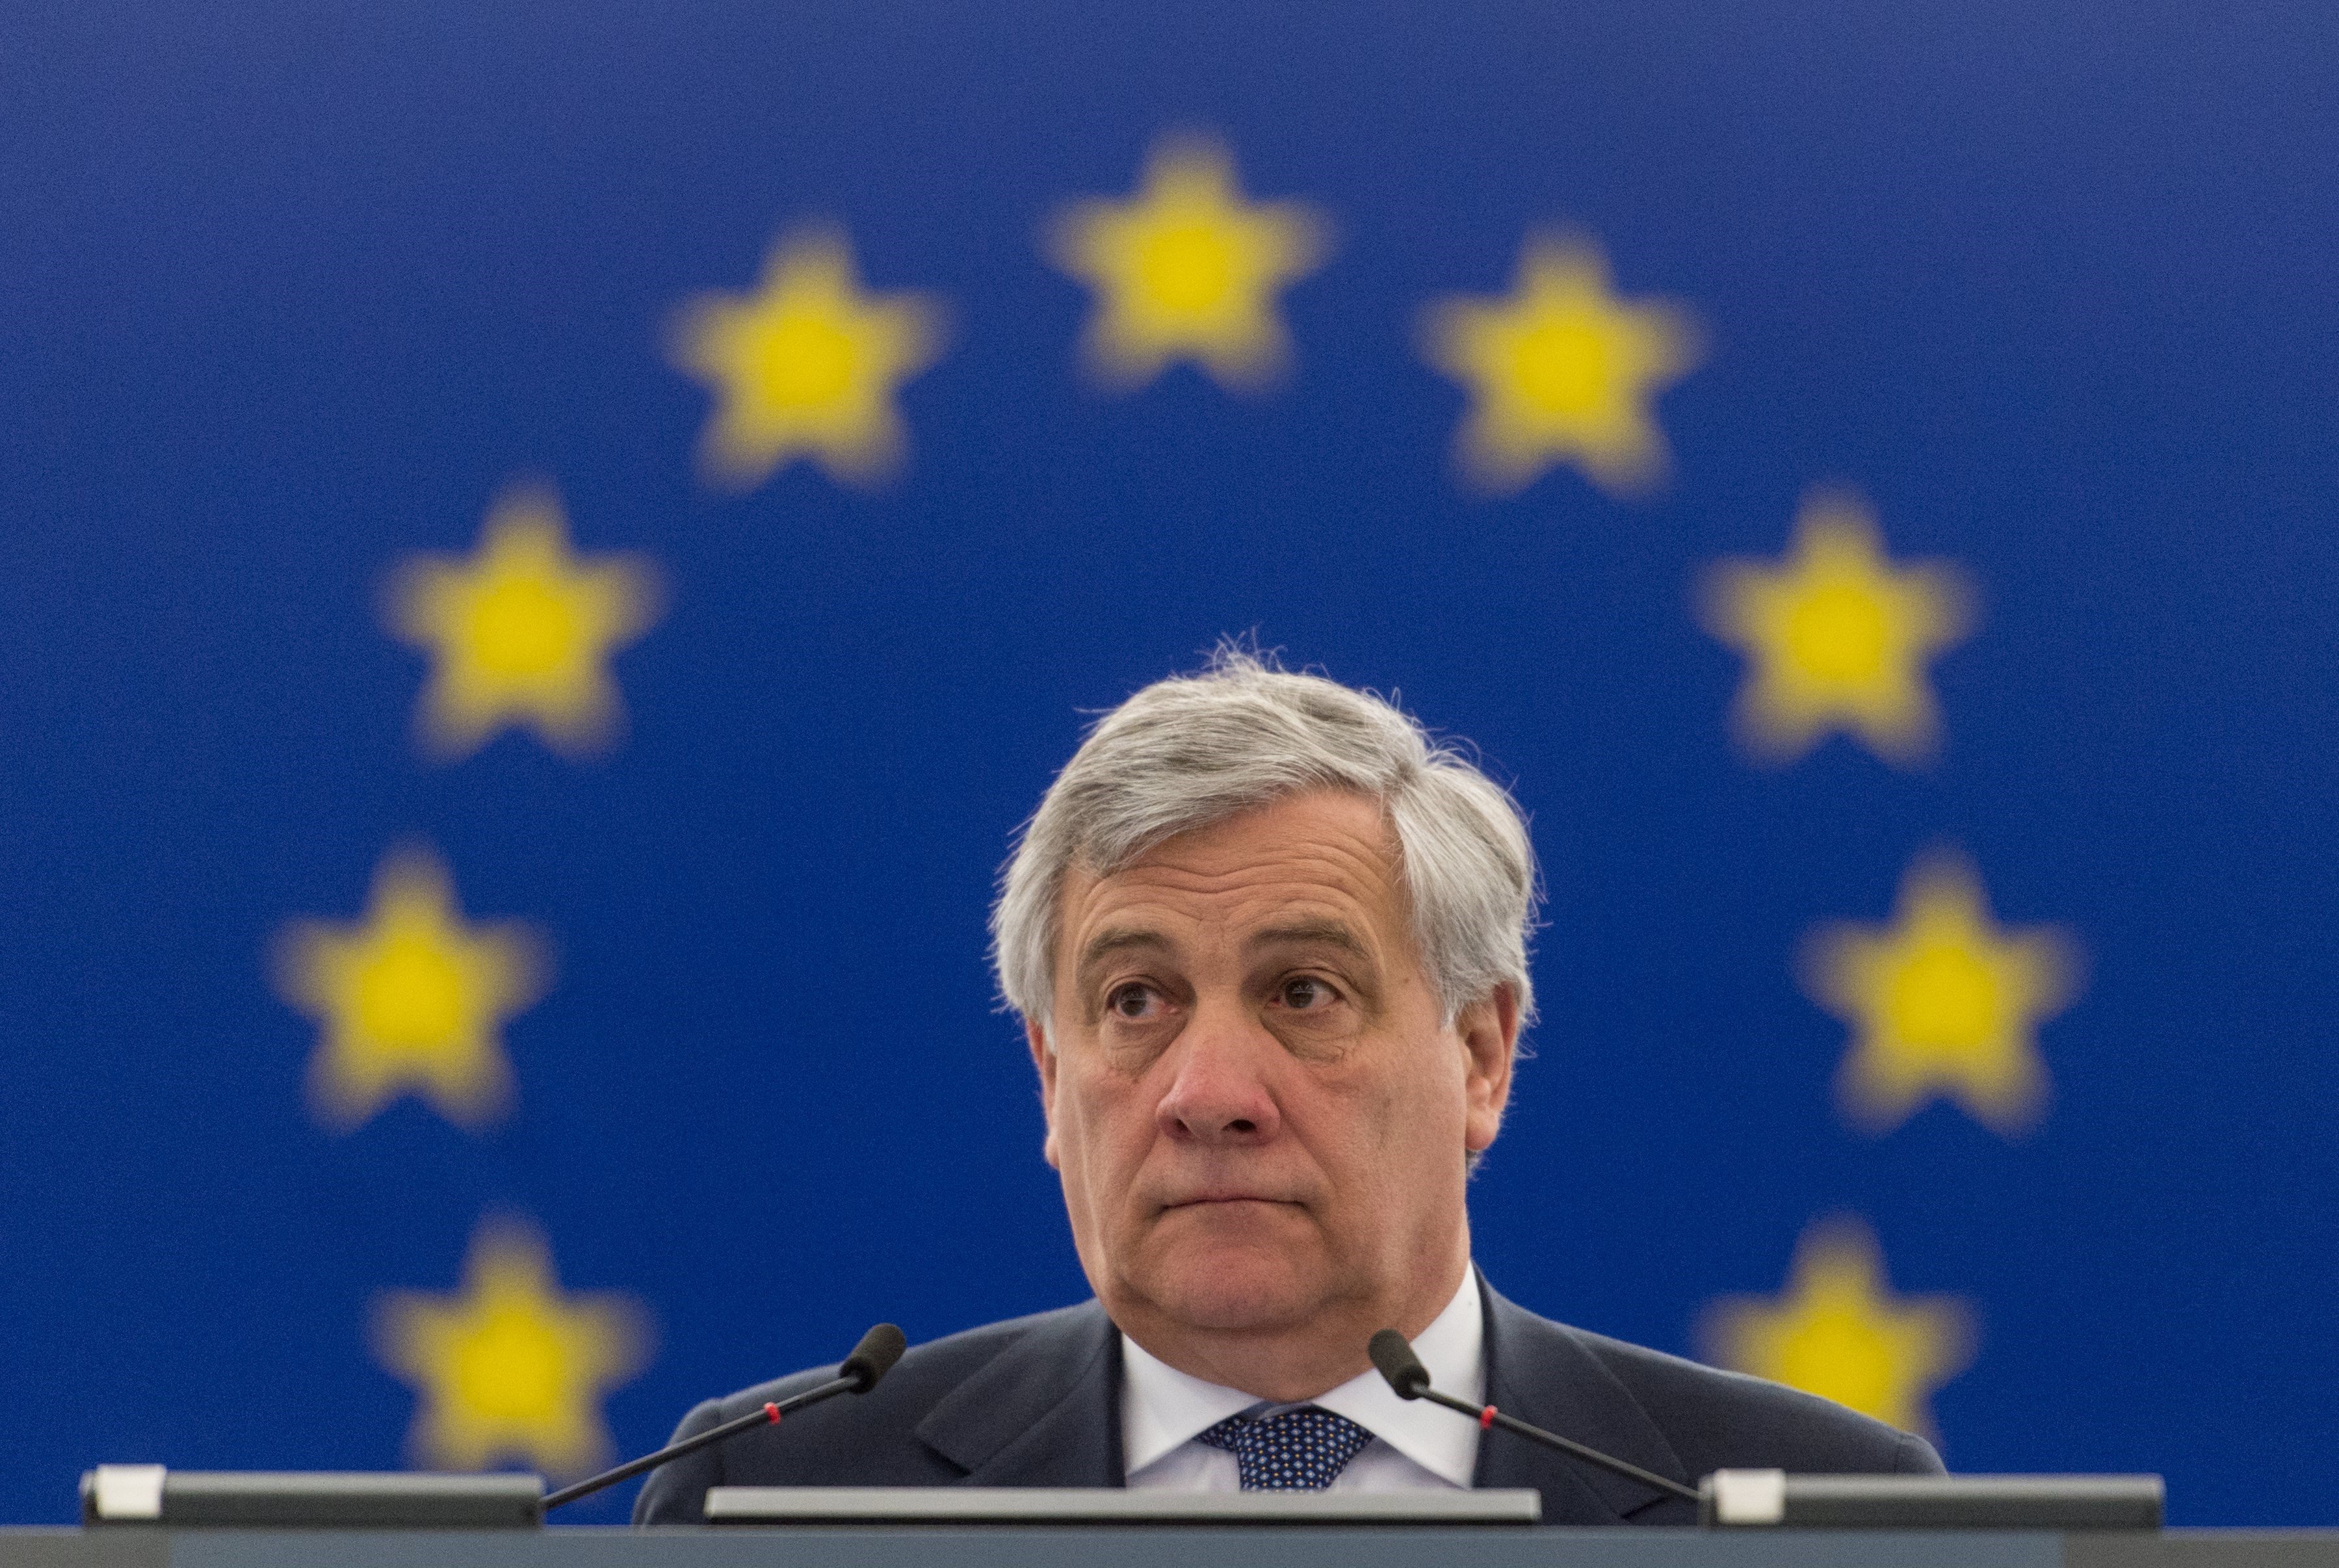 ¿Crees que Tajani ha puesto en riesgo la libertad de expresión en Europa?